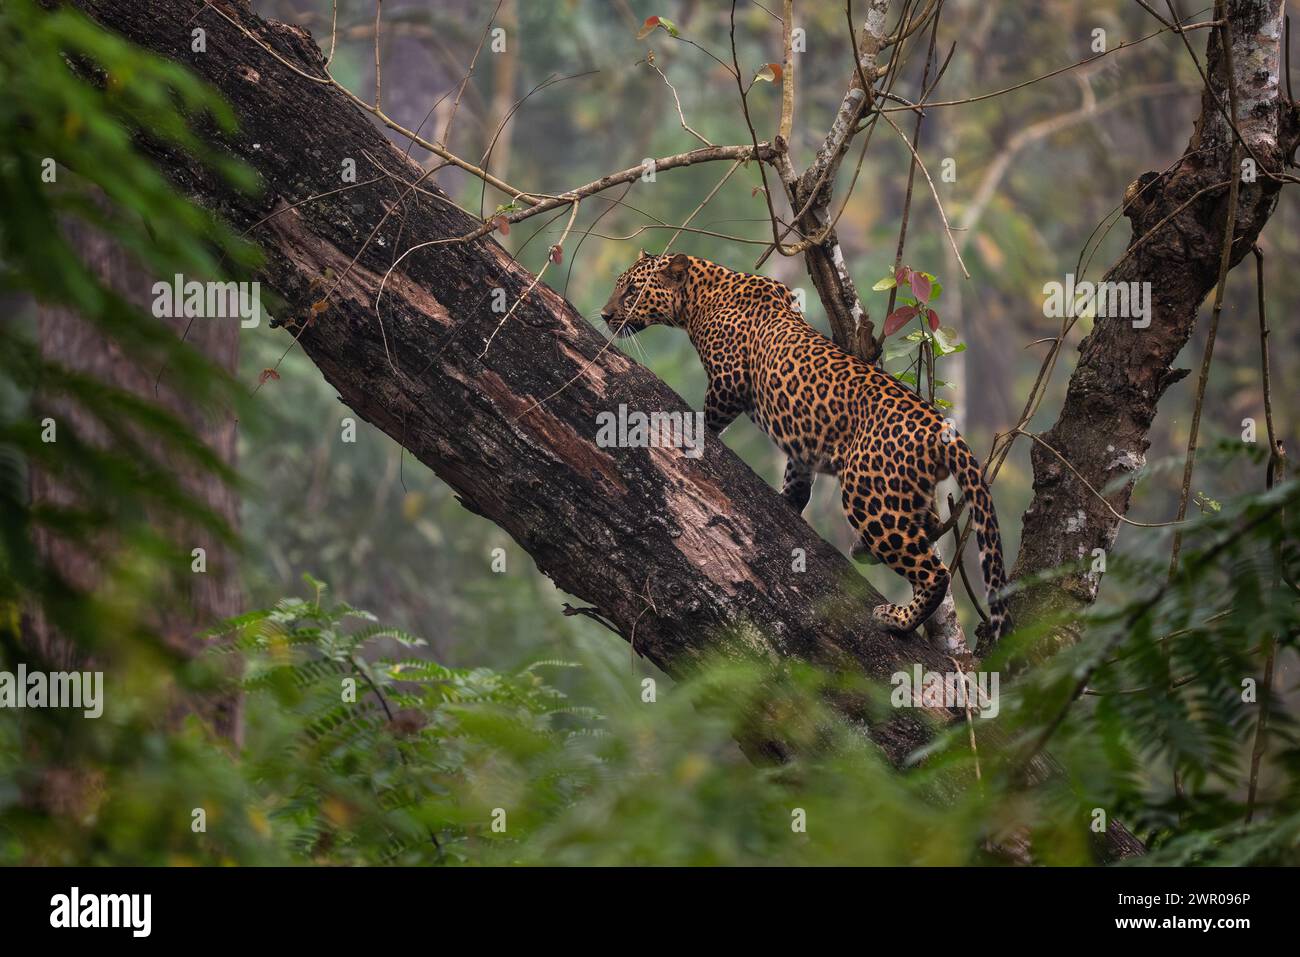 Indischer Leopard - Panthera pardus fusca, wunderschöne, ikonische Wildkatze aus südasiatischen Wäldern und Wäldern, Nagarahole Tiger Reserve, Indien. Stockfoto